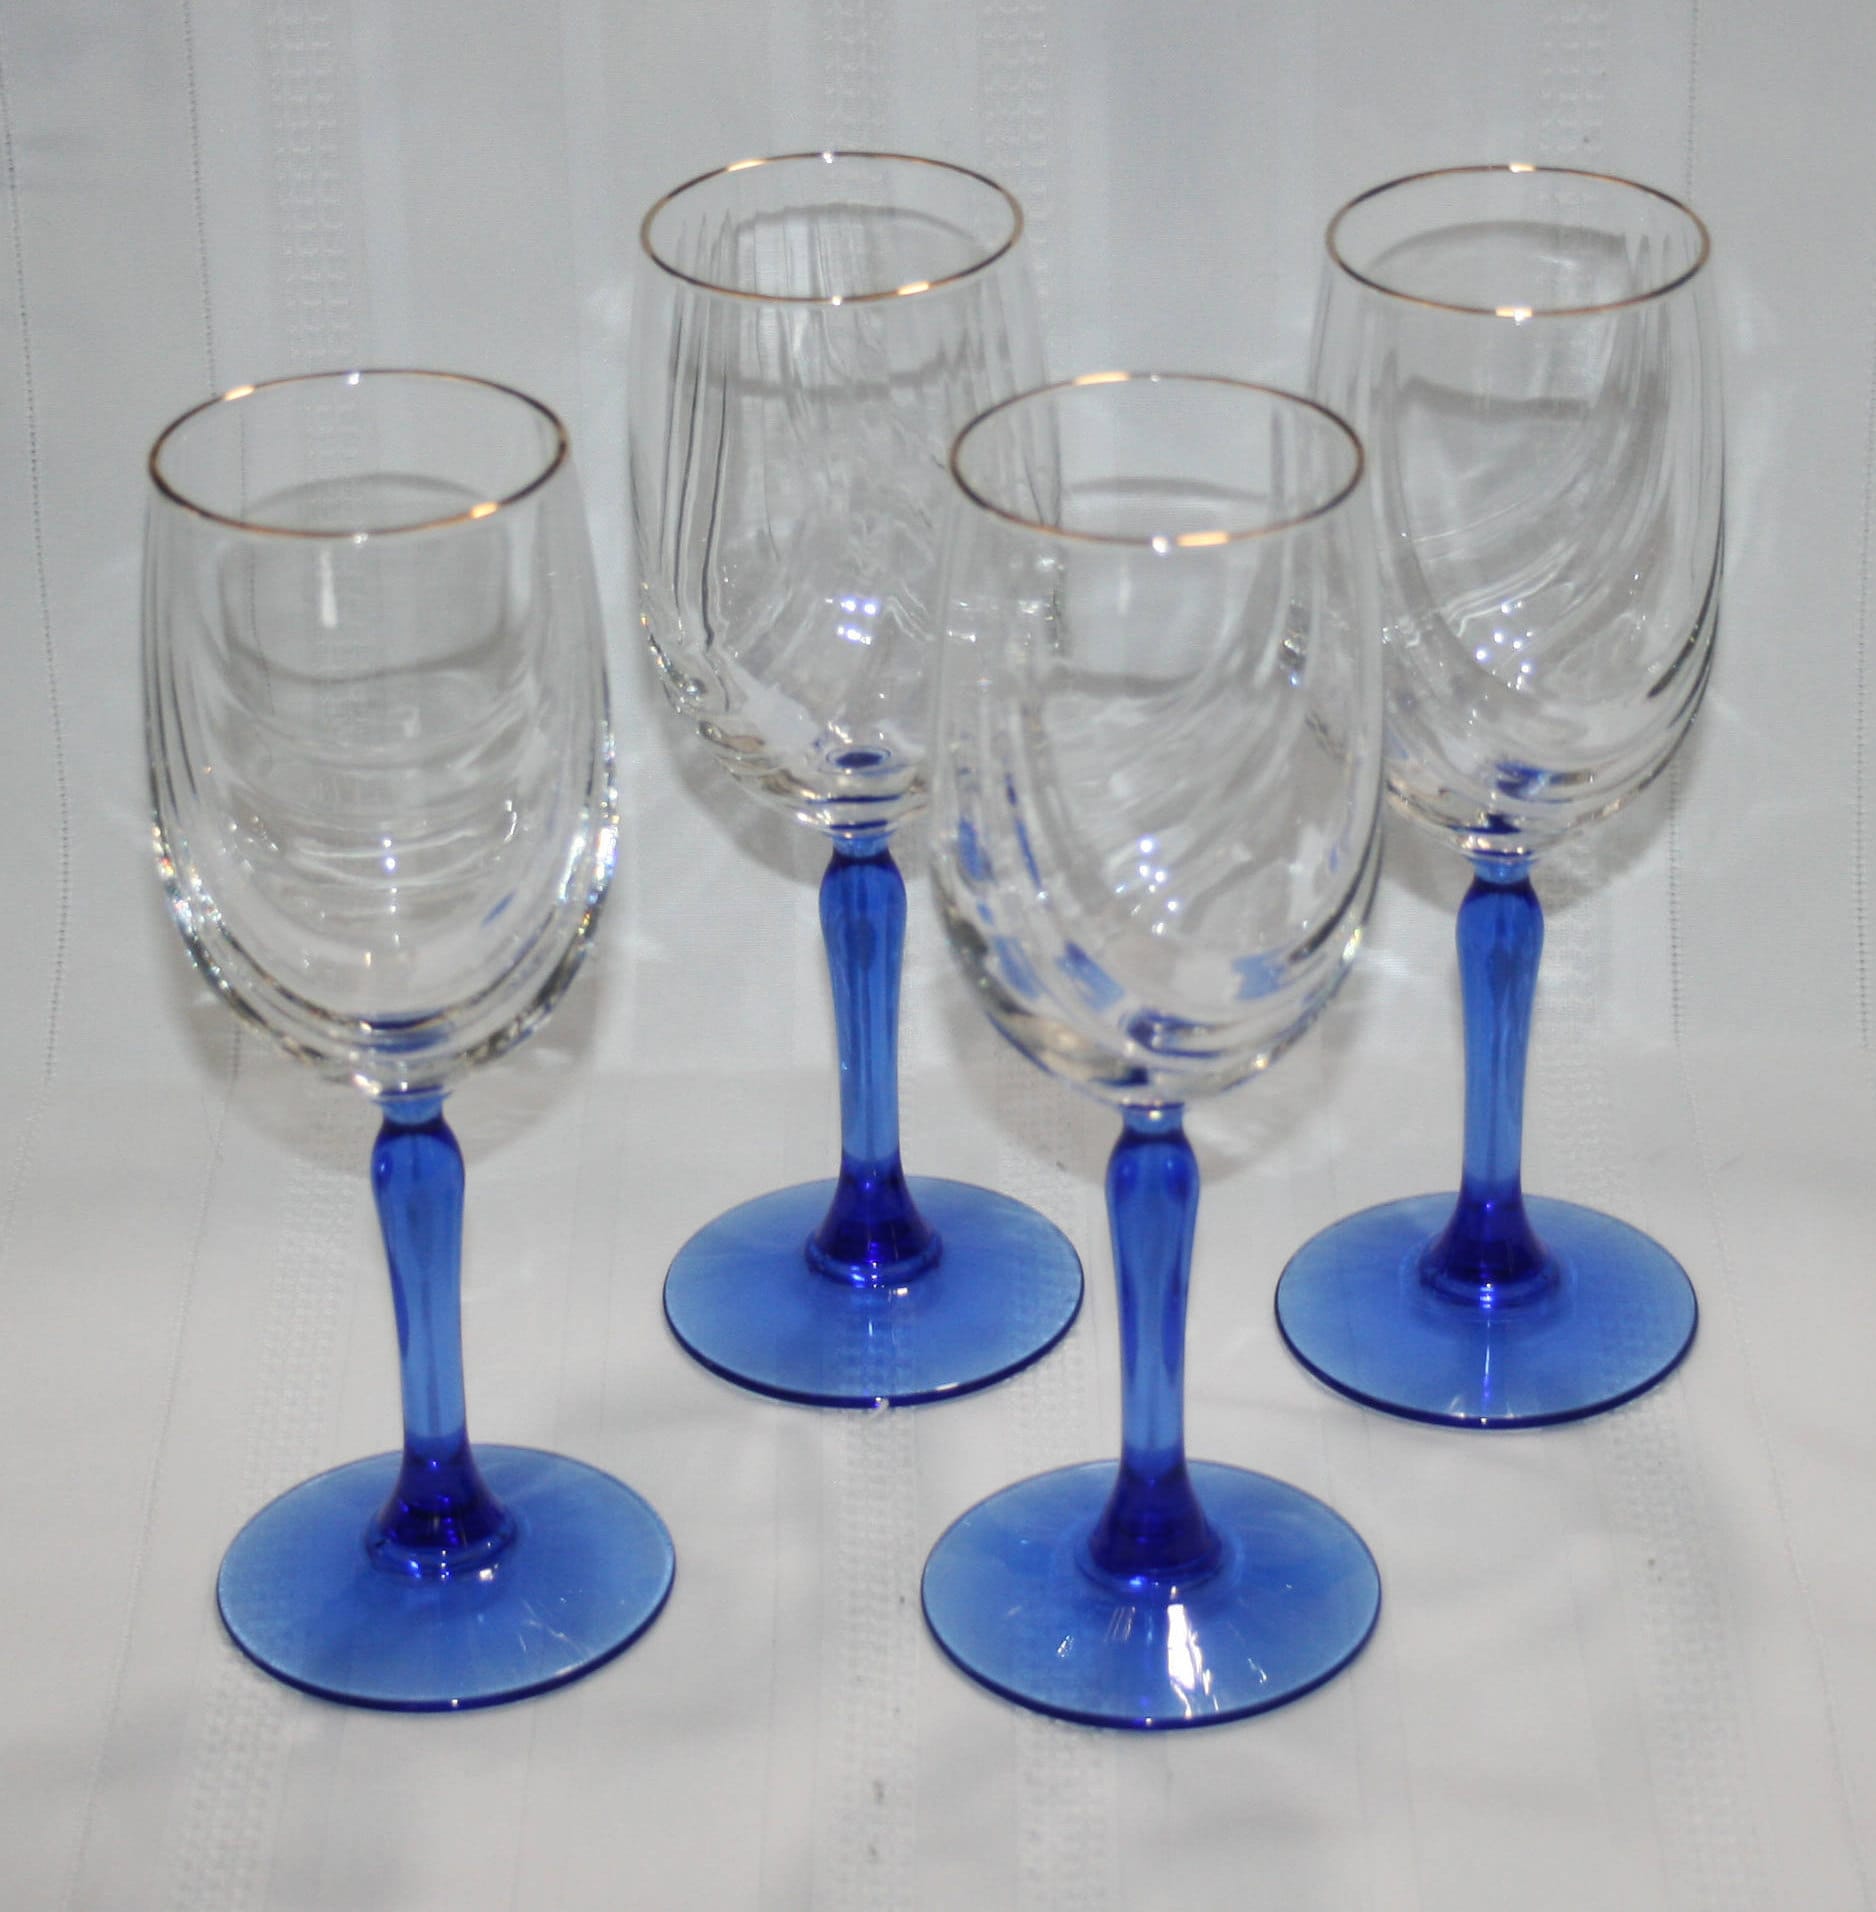 Lenox Atrium Crystal Glasses, Set of 2 Wine Glasses, Vintage Drinkware,  Luxury Glassware 